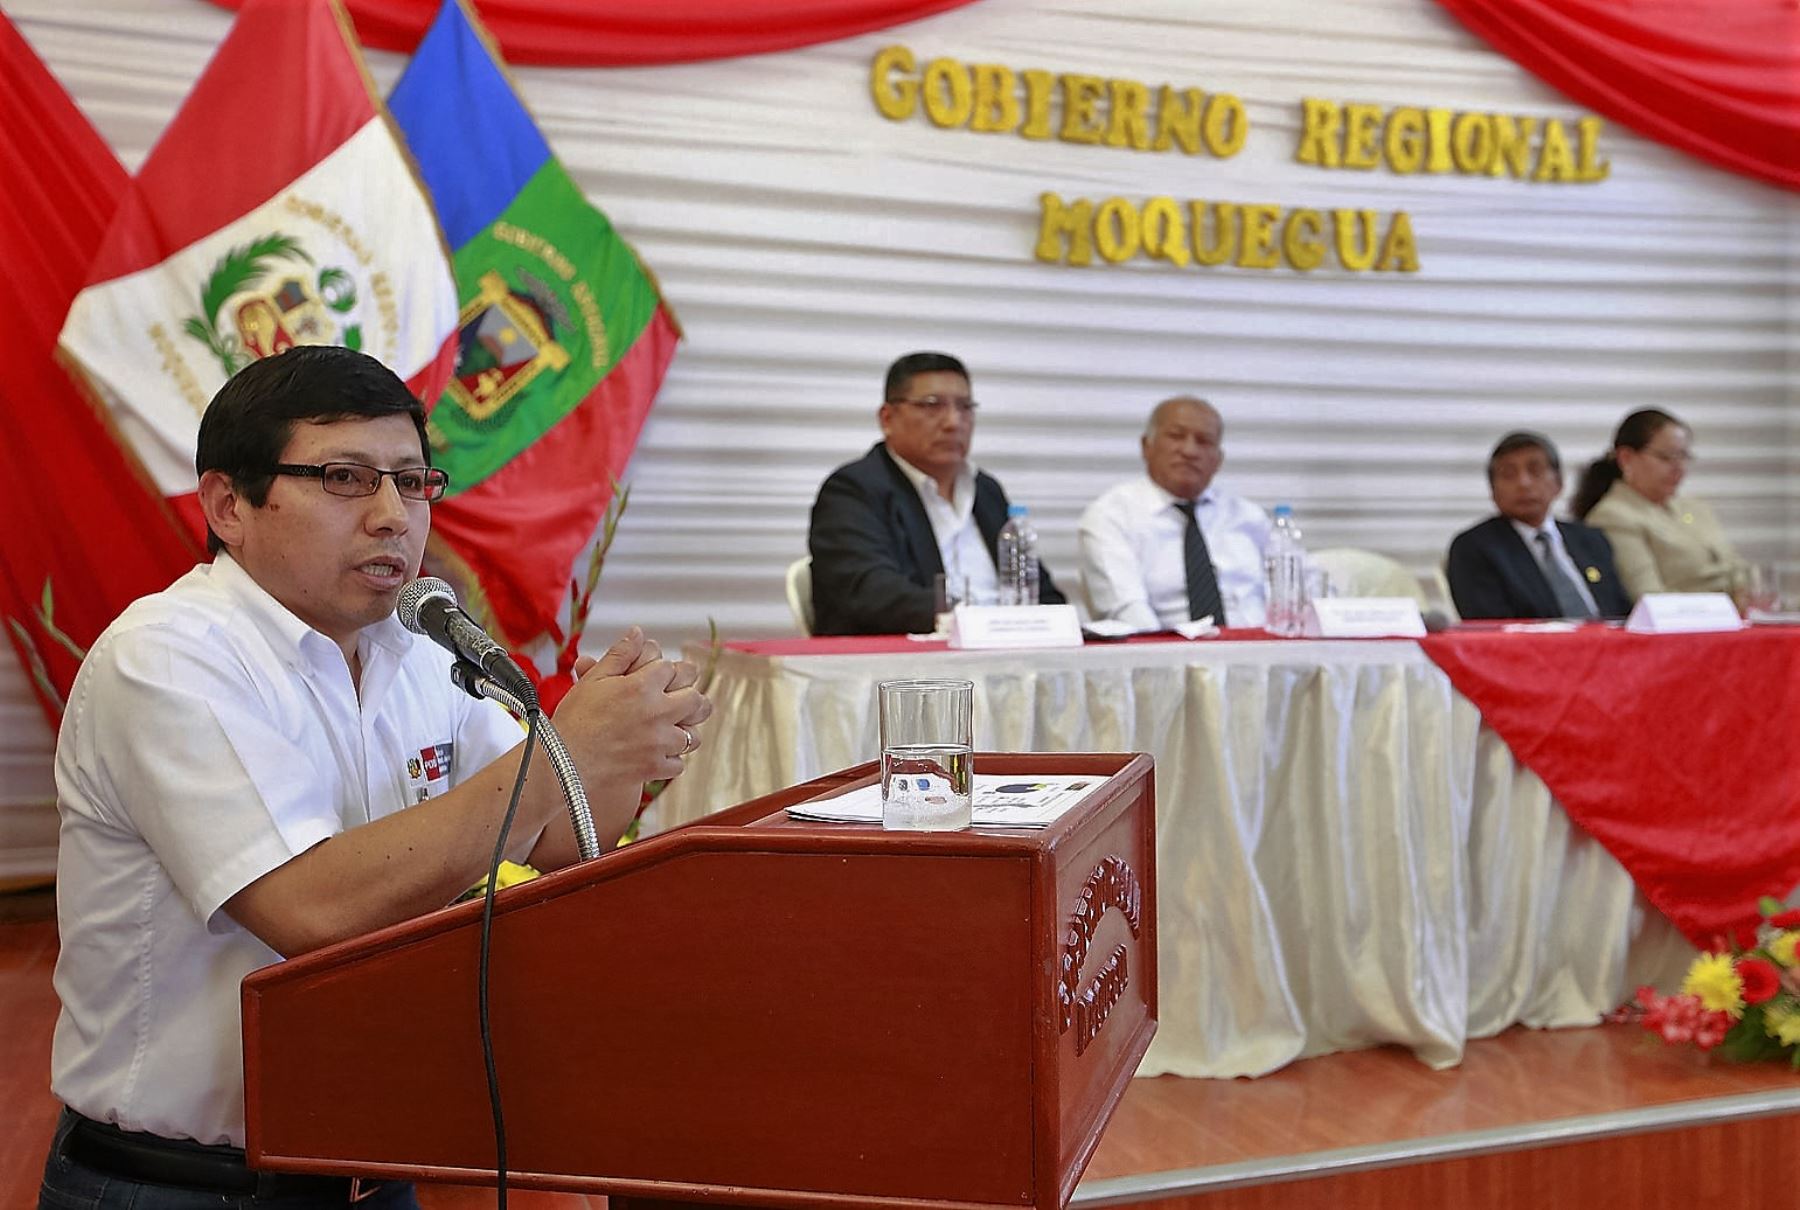 Ministro de Vivienda, Edmer Trujillo, se reunió con autoridades regionales y locales de Moquegua para evaluar obras de saneamiento.